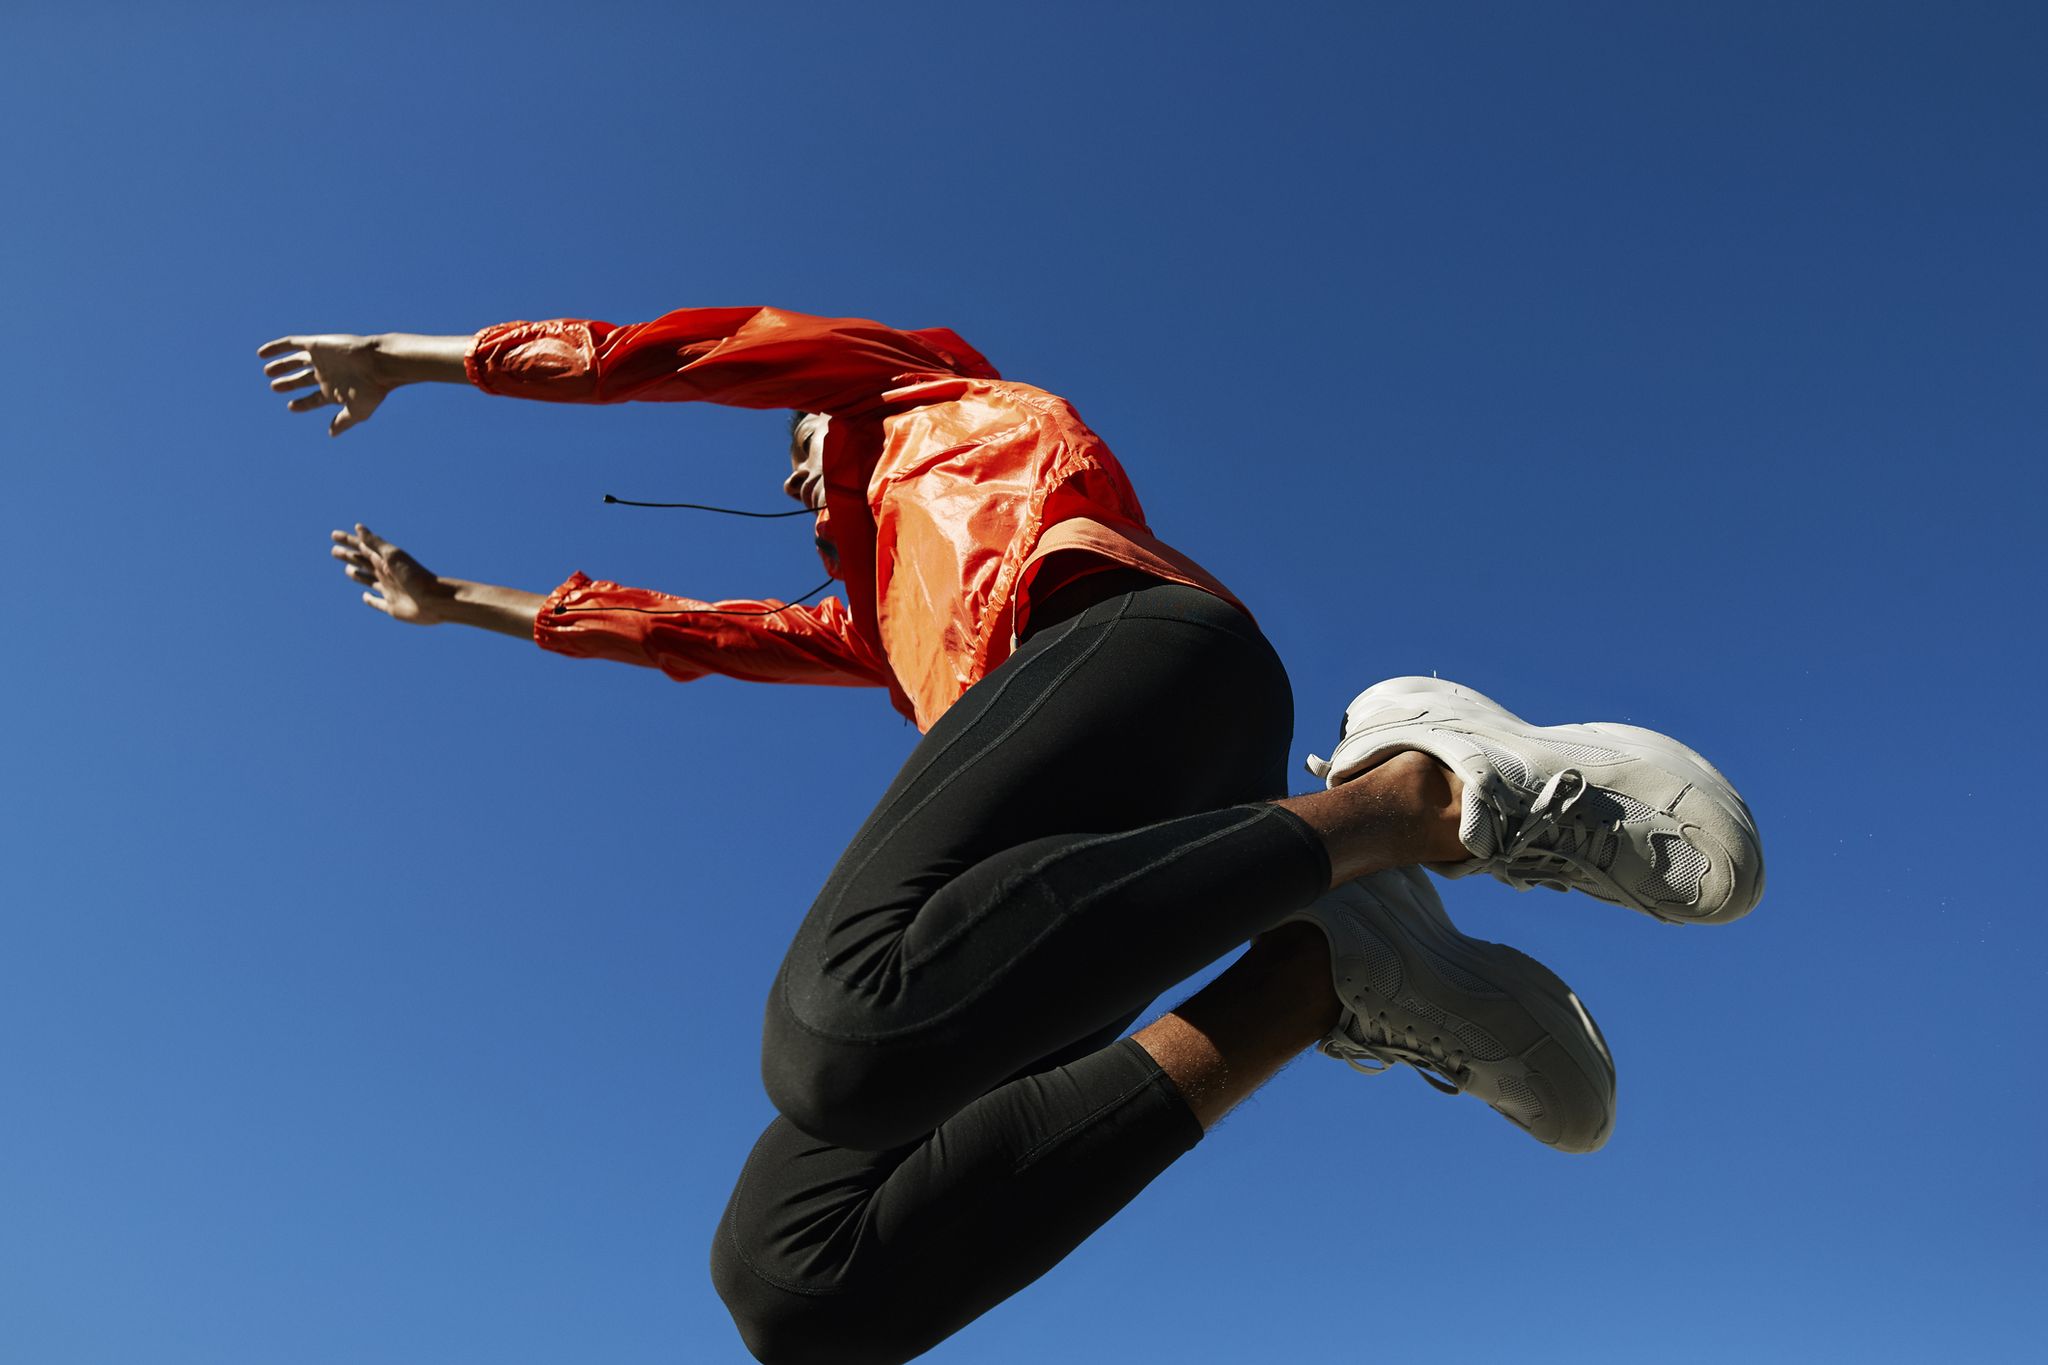 Jumping fitness: ¿cómo practicarlo? - Mejor con Salud